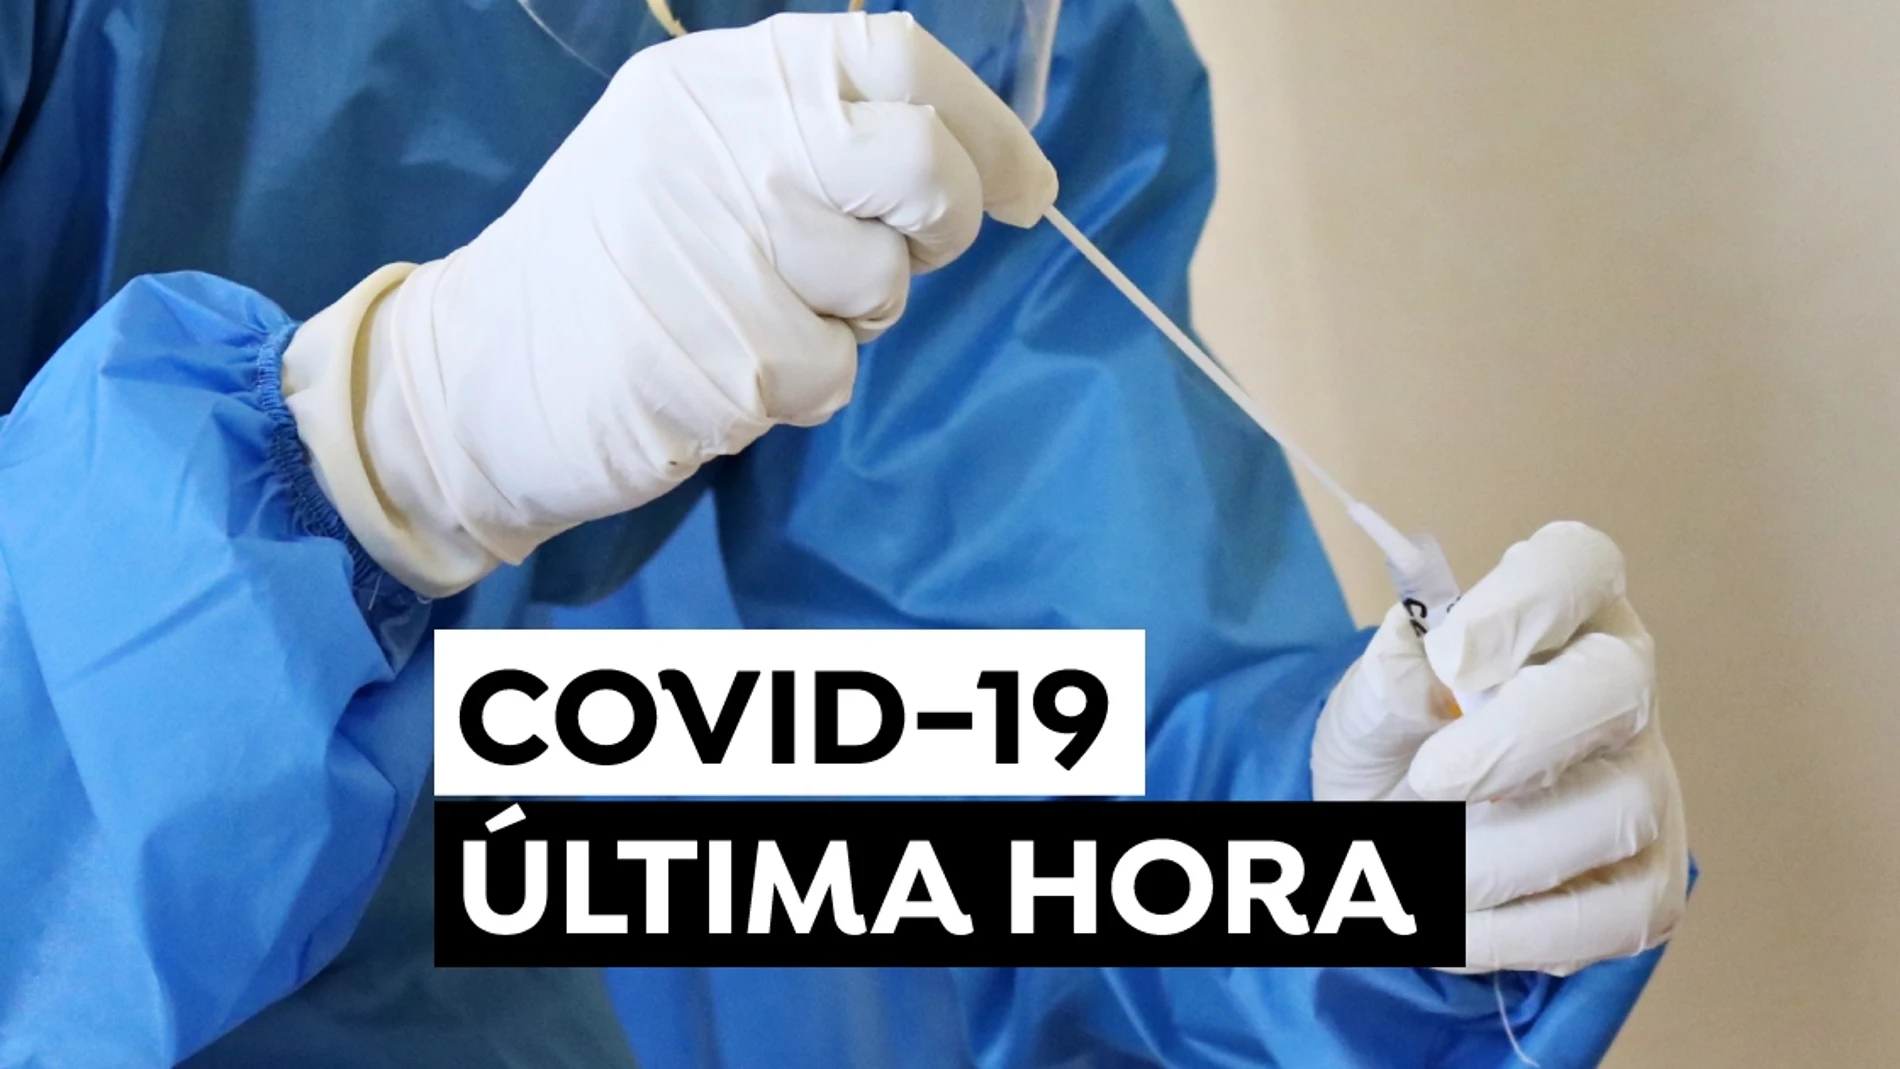 COVID-19: Restricciones hoy por Navidad y última hora del coronavirus en España